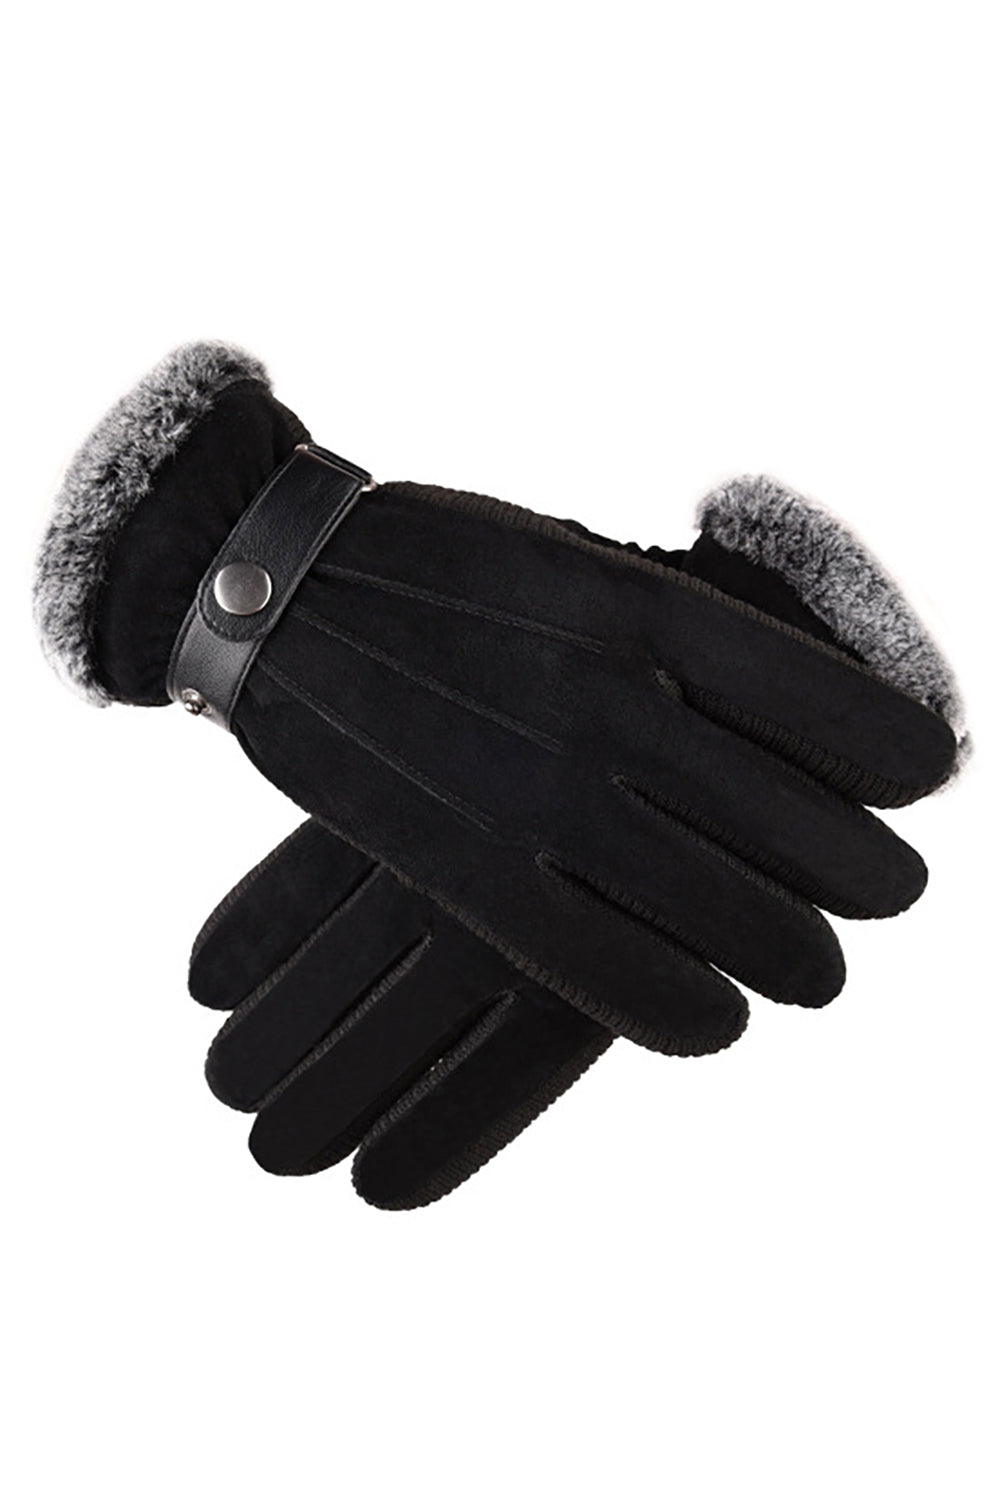 Schwarz Schnalle Schweineleder Warm Winter Herren Handschuhe mit Feder